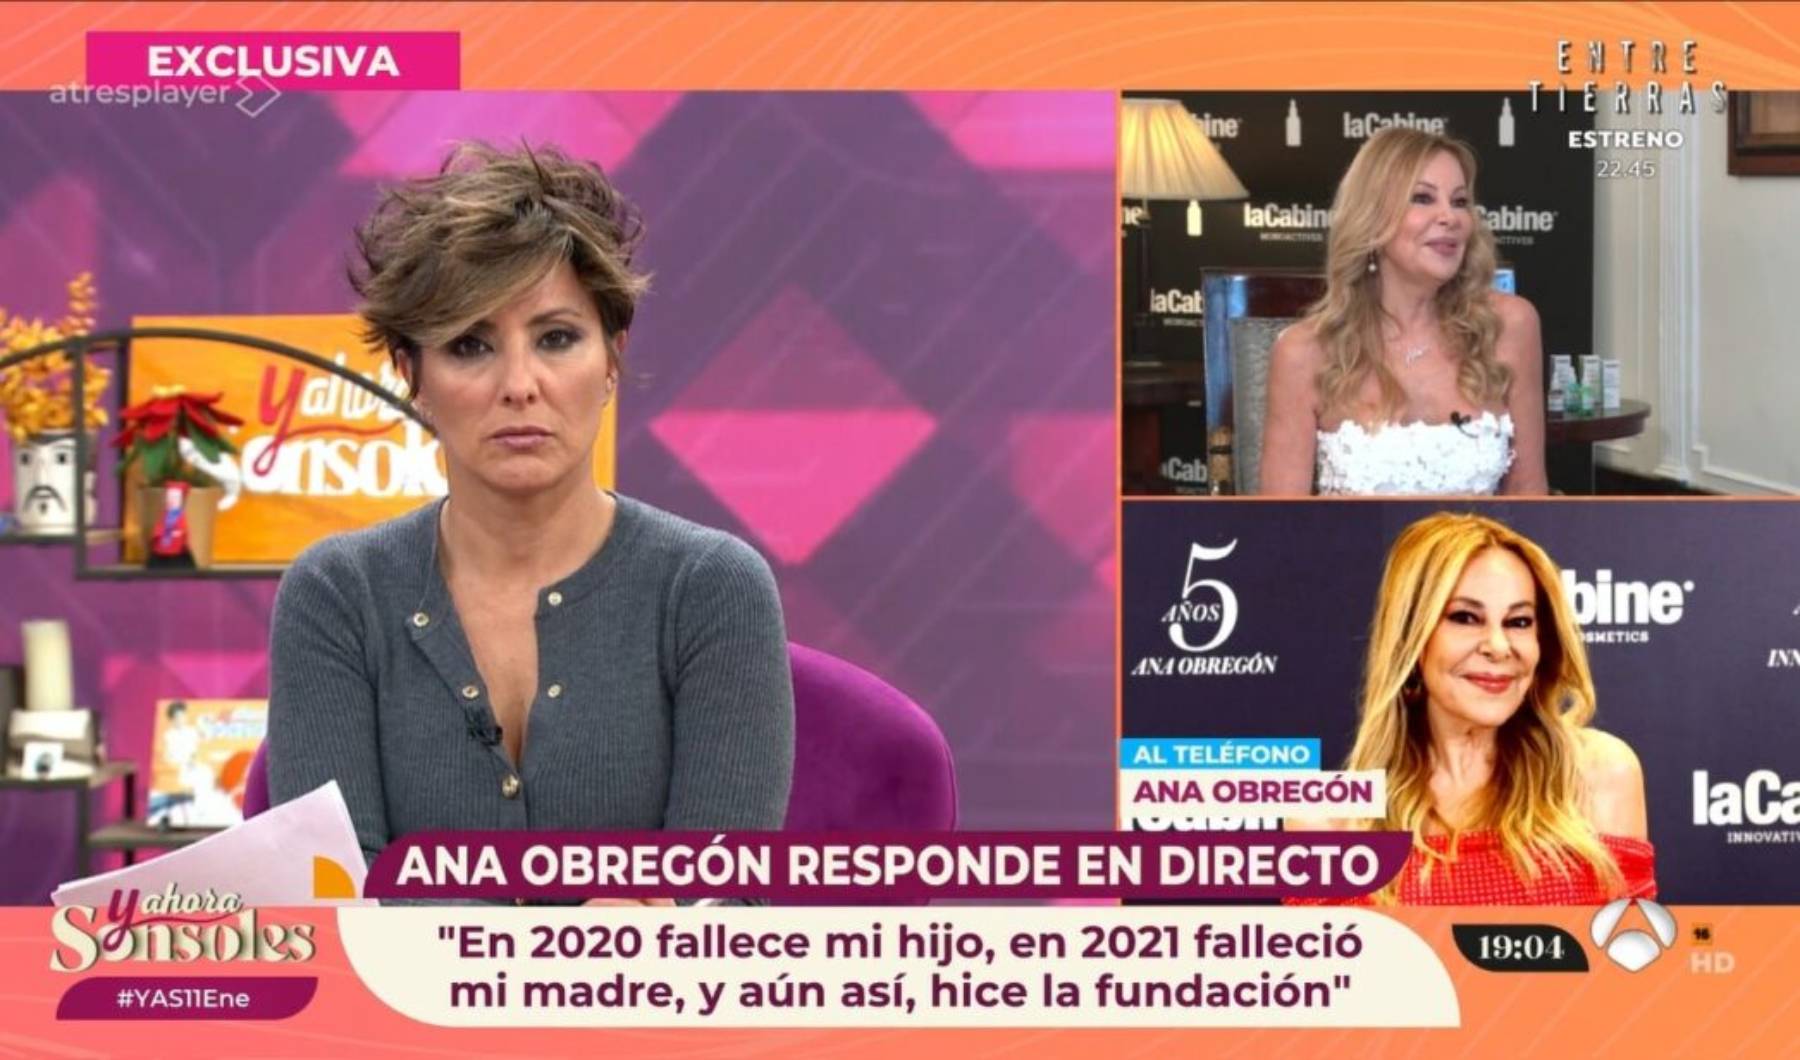 Ana Obregón, Ana Obregón Fundación, Fundación Aless Lequio